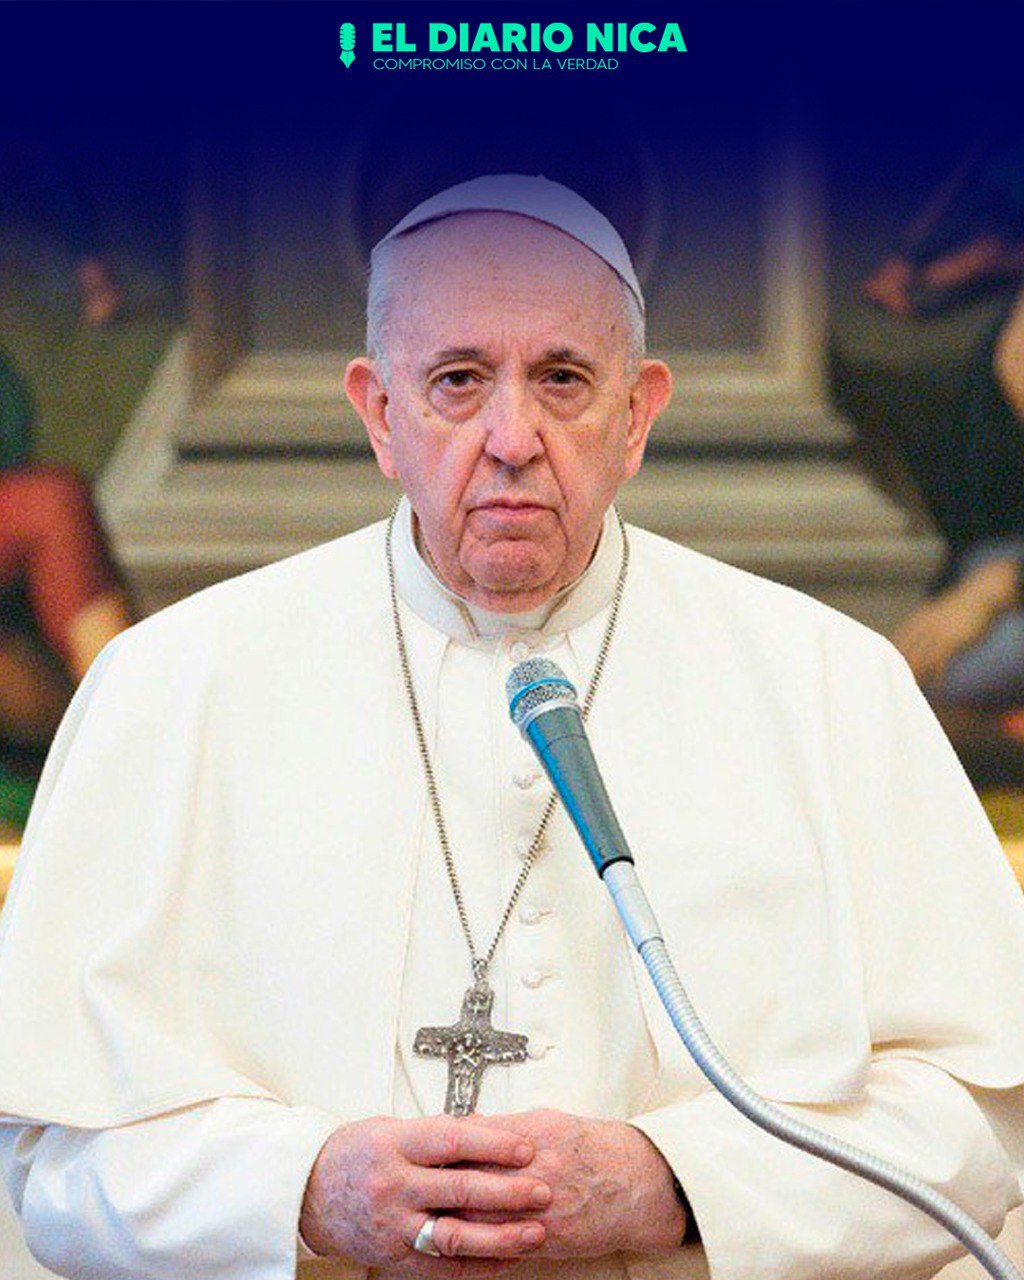 Pontífice pedirá perdón a los indígenas abusados